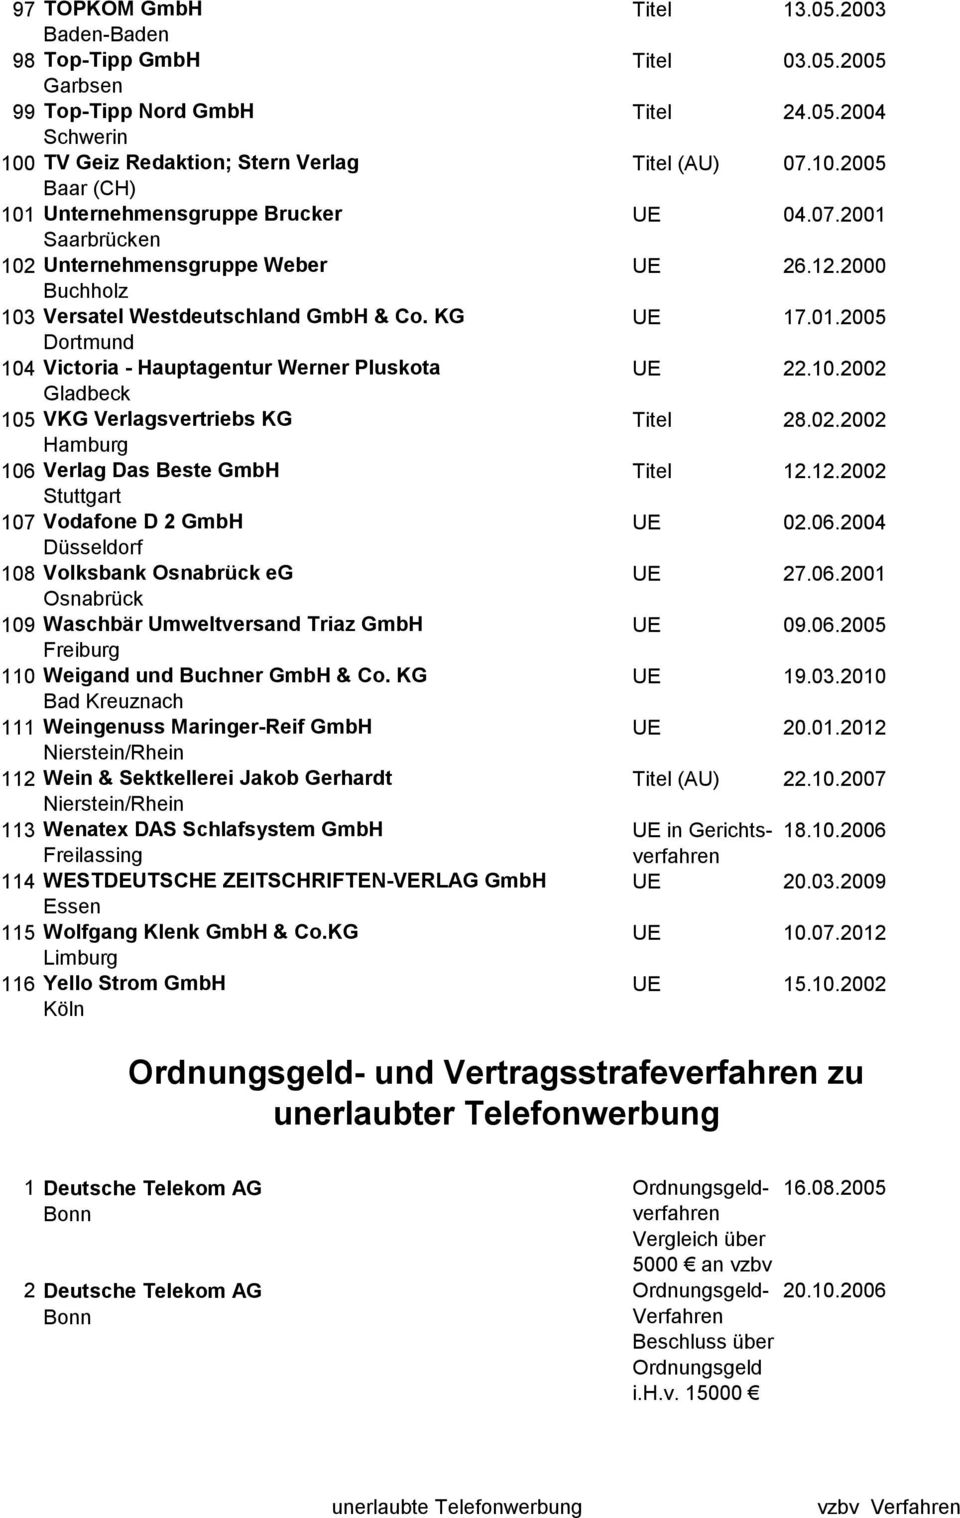 KG Dortmund 104 Victoria - Hauptagentur Werner Pluskota Gladbeck 105 VKG Verlagsvertriebs KG 106 Verlag Das Beste GmbH Stuttgart 107 Vodafone D 2 GmbH 108 Volksbank eg 109 Waschbär Umweltversand